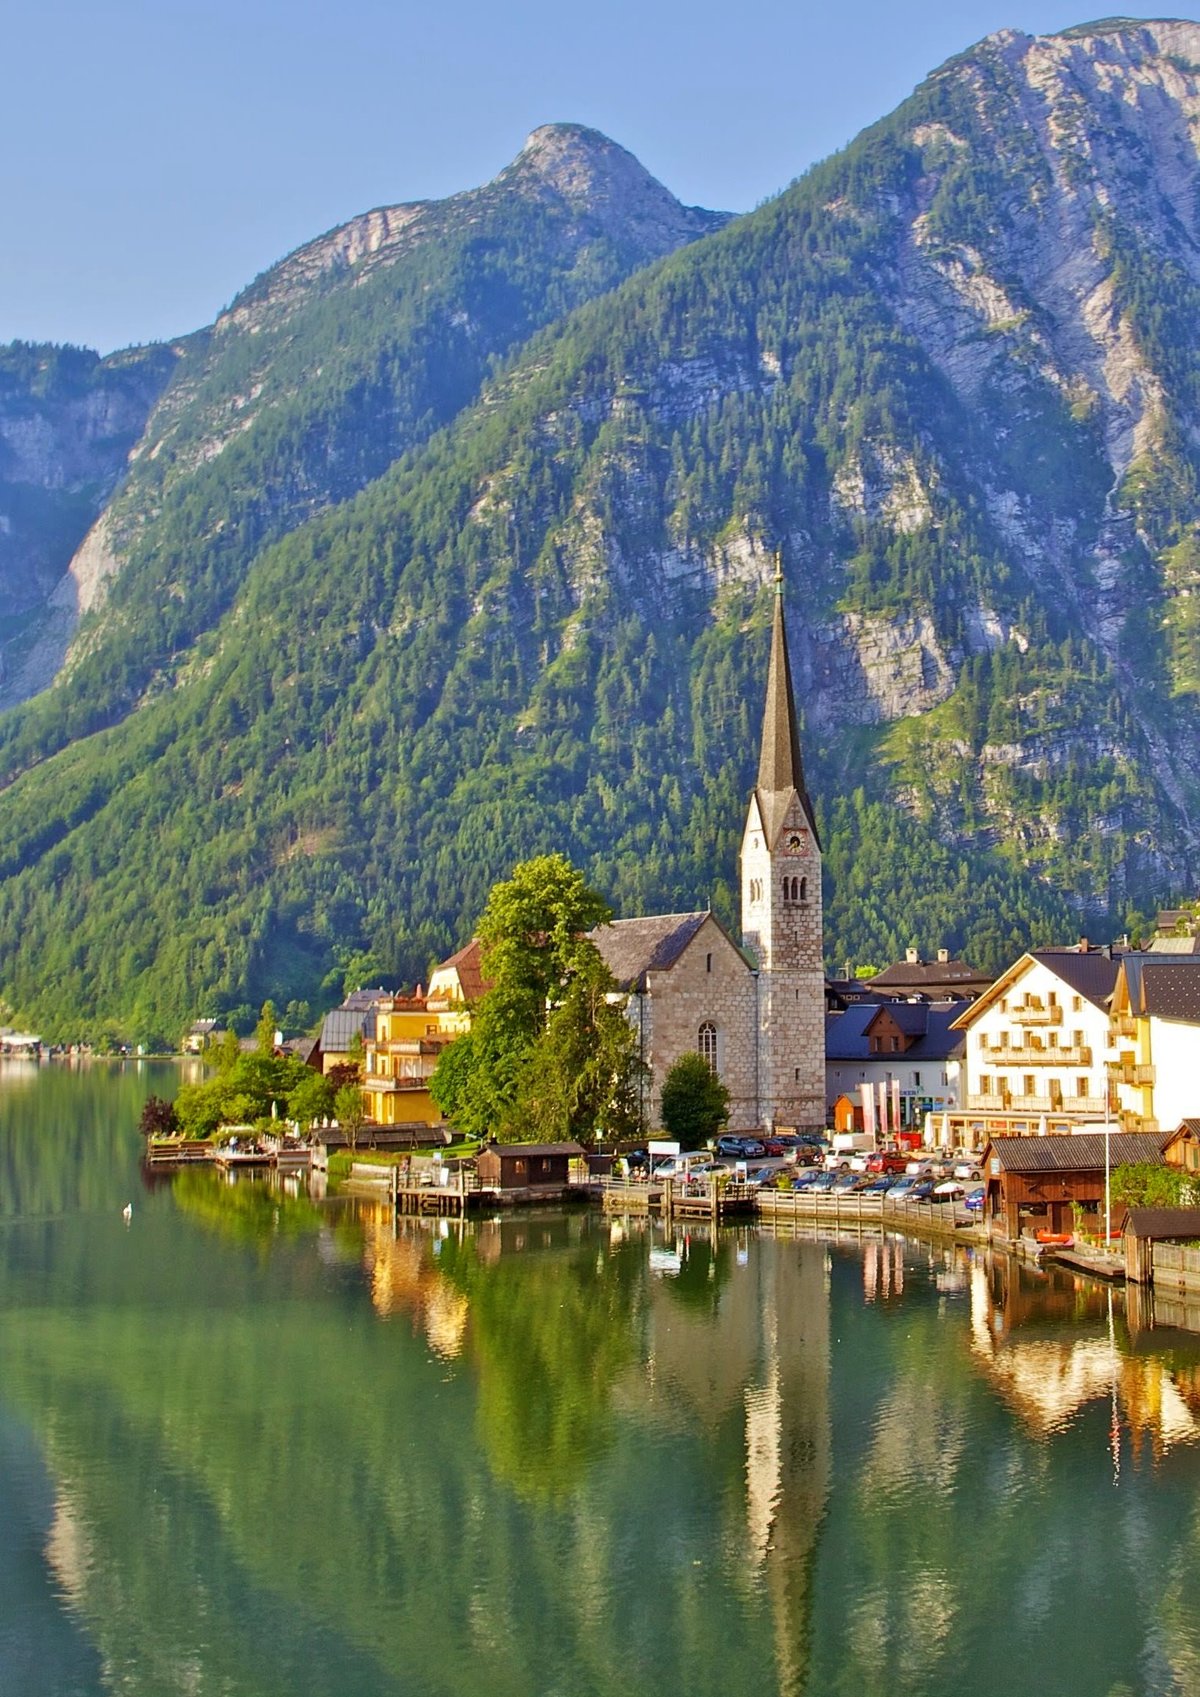 Immobilien in Österreich verkaufen